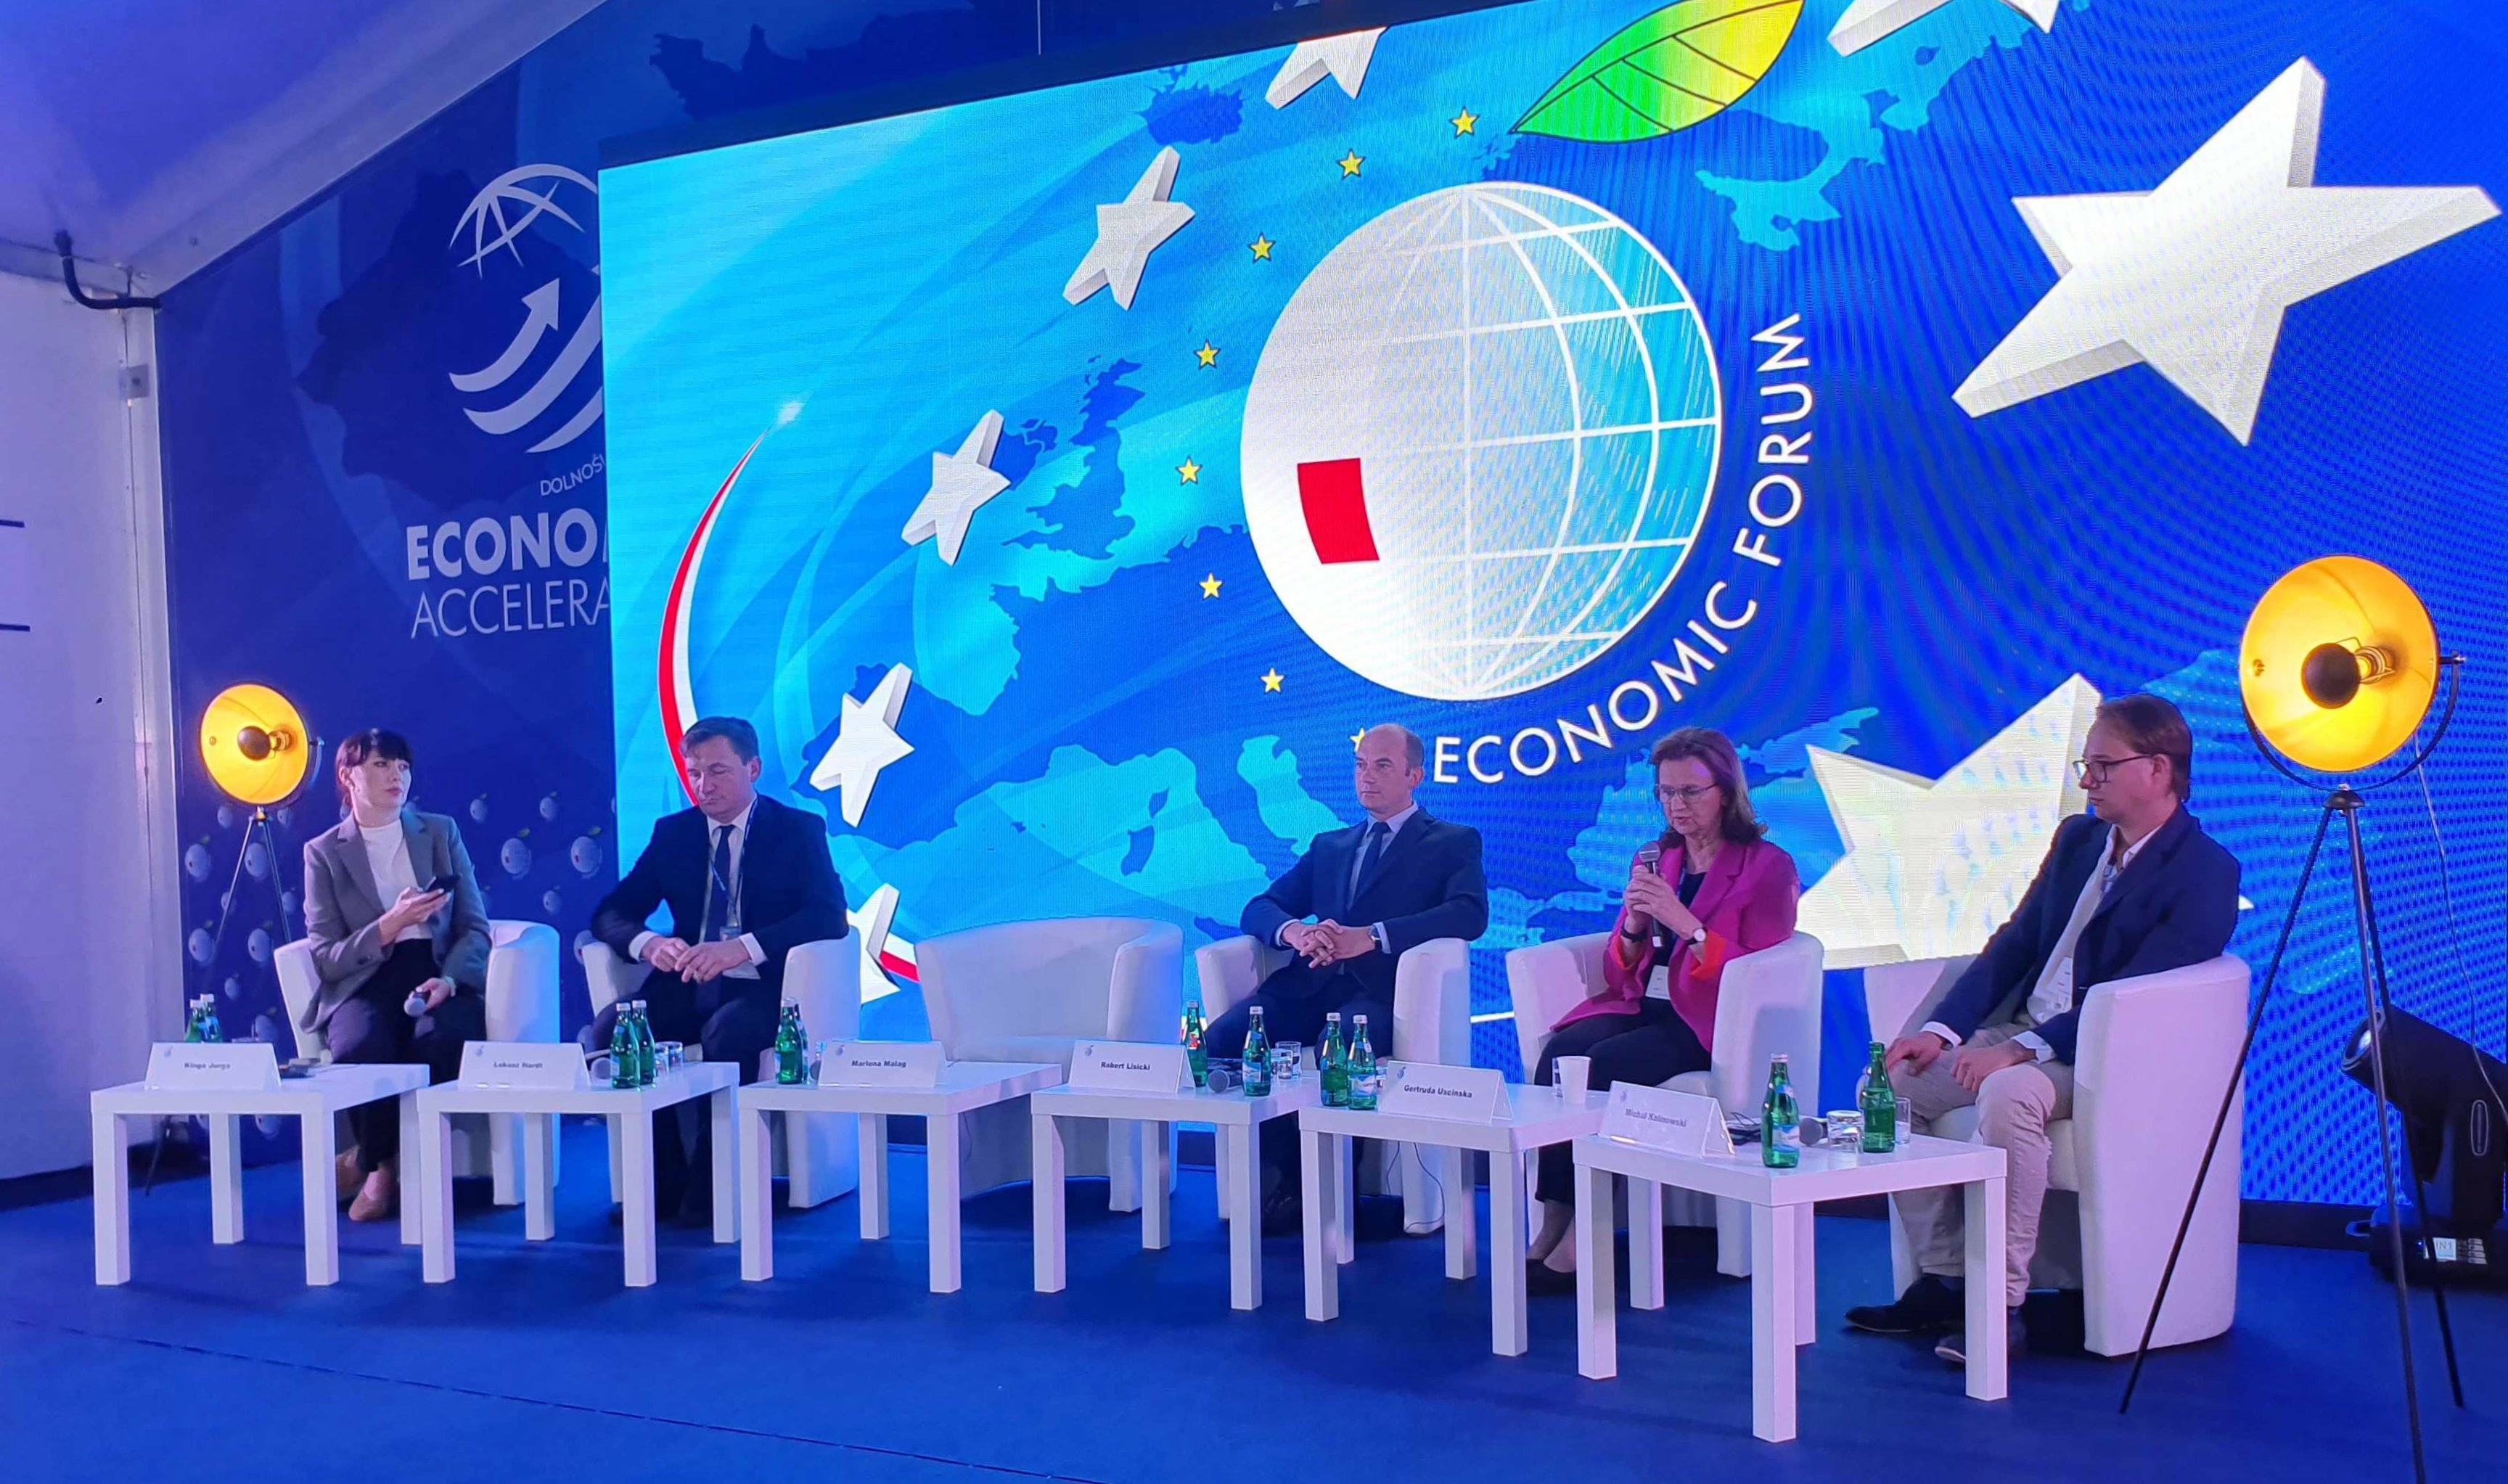 Forum Ekonomiczne w Karpaczu - prelegenci na tle niebieskiego banera. Link do powiekszonego zdjęcia